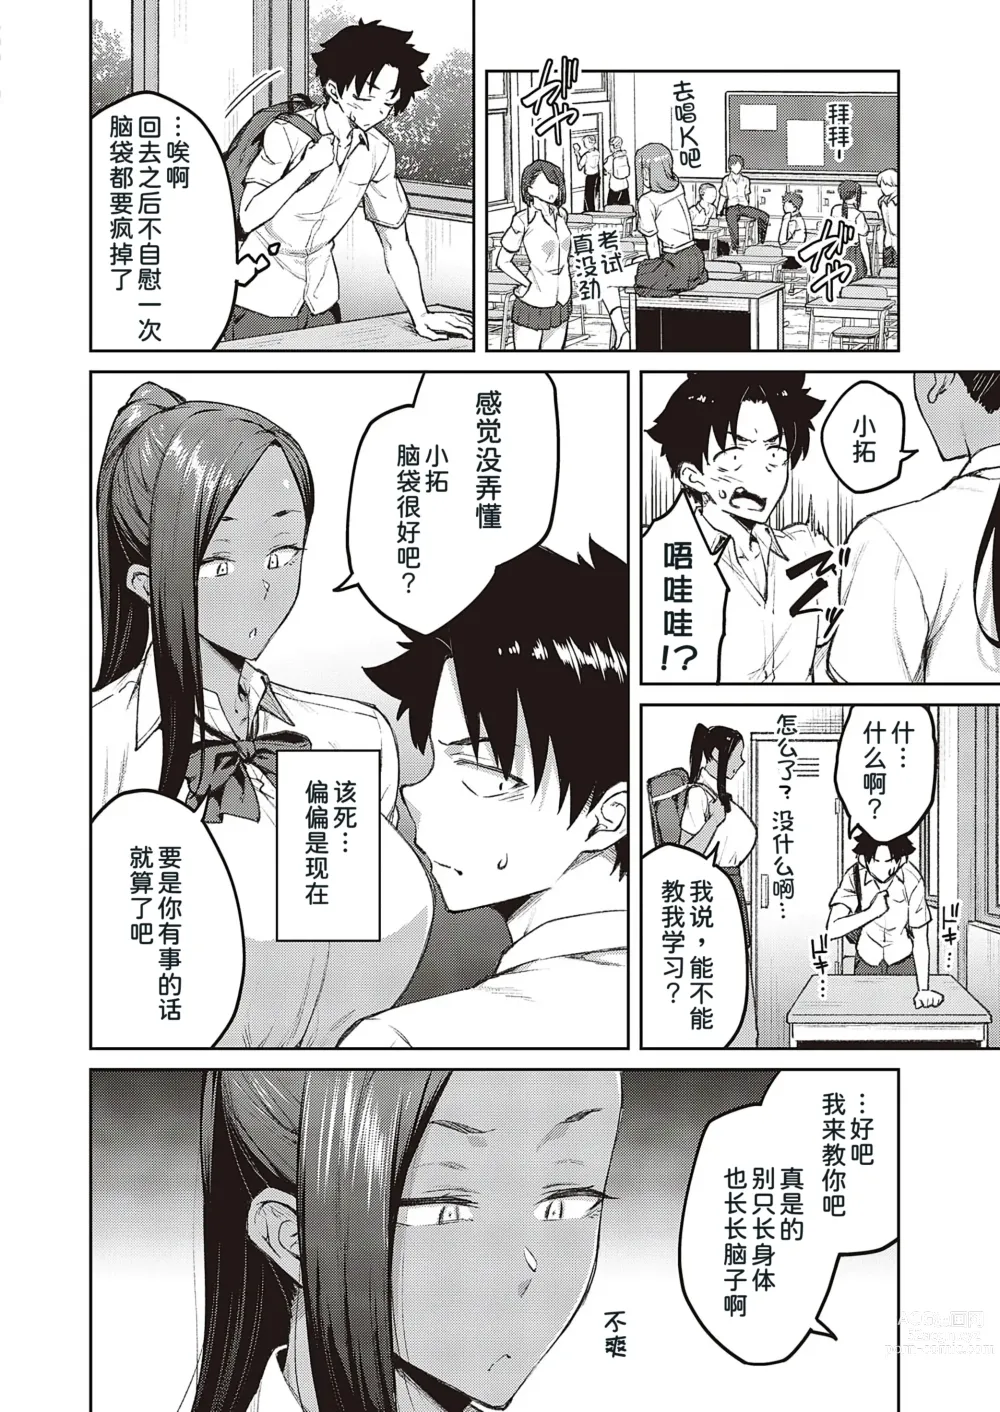 Page 9 of manga Tachiaoi 2